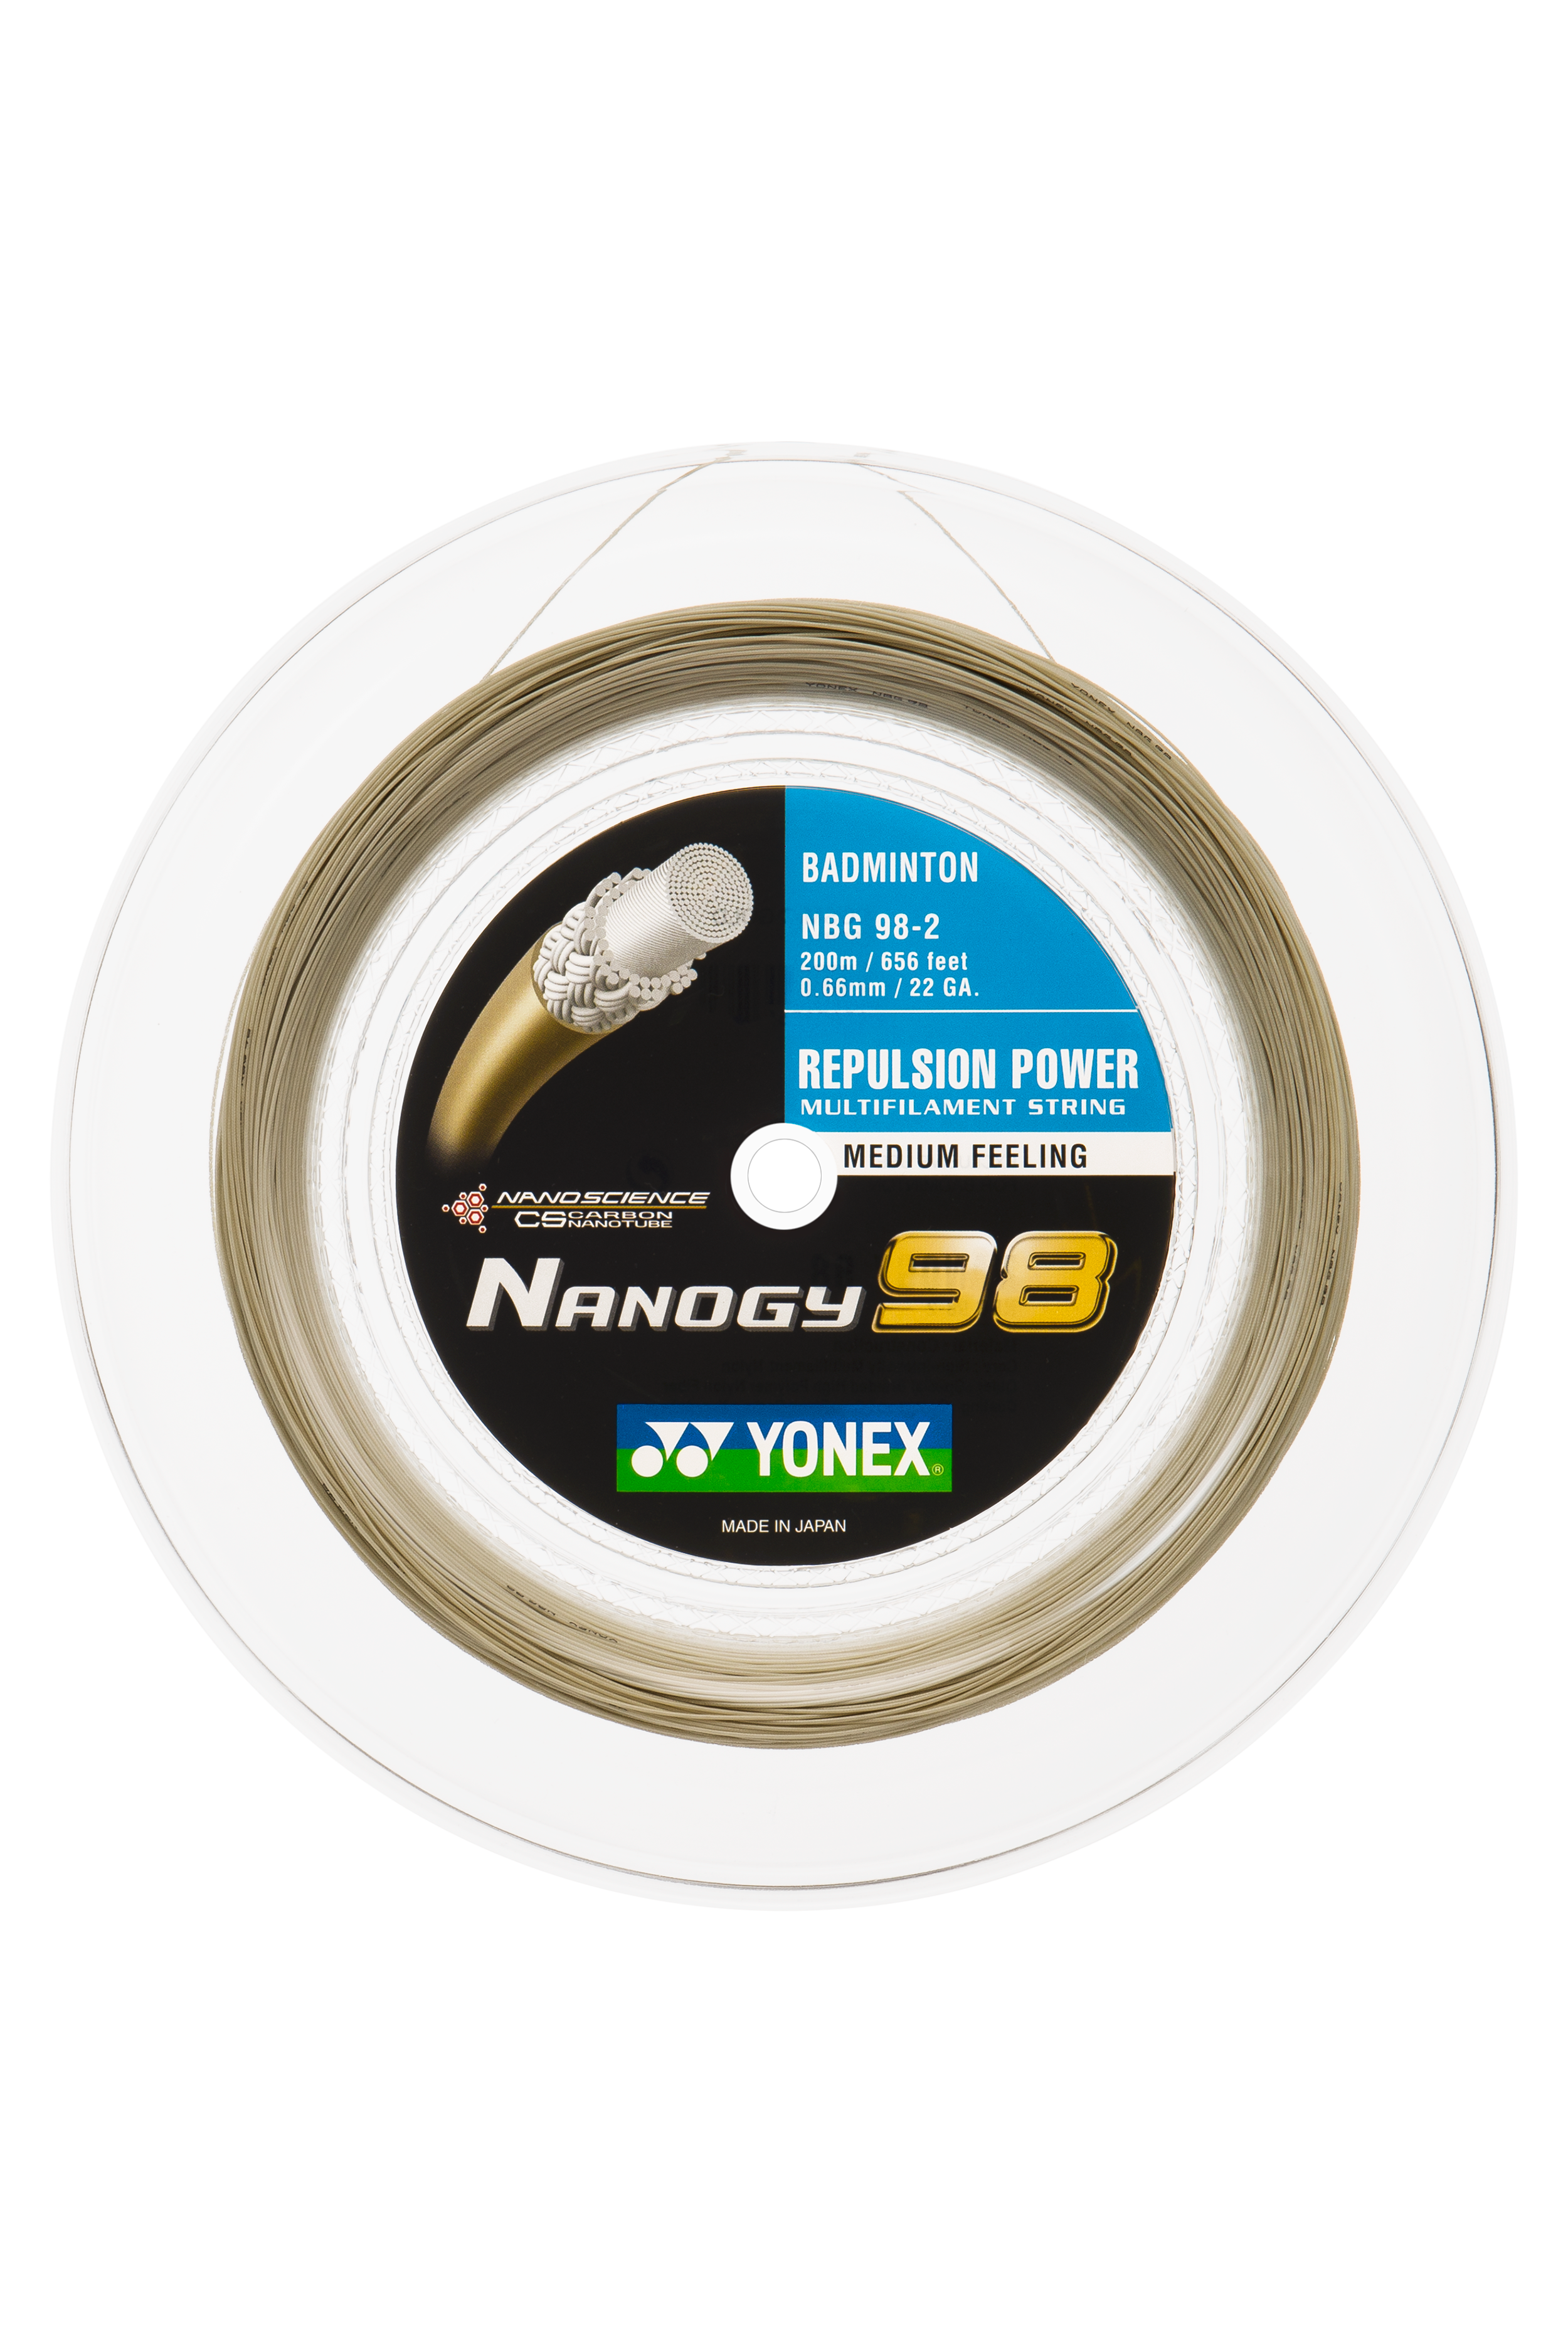 Yonex Nanogy 98 Badminton String 200m Reel – GSM Sports